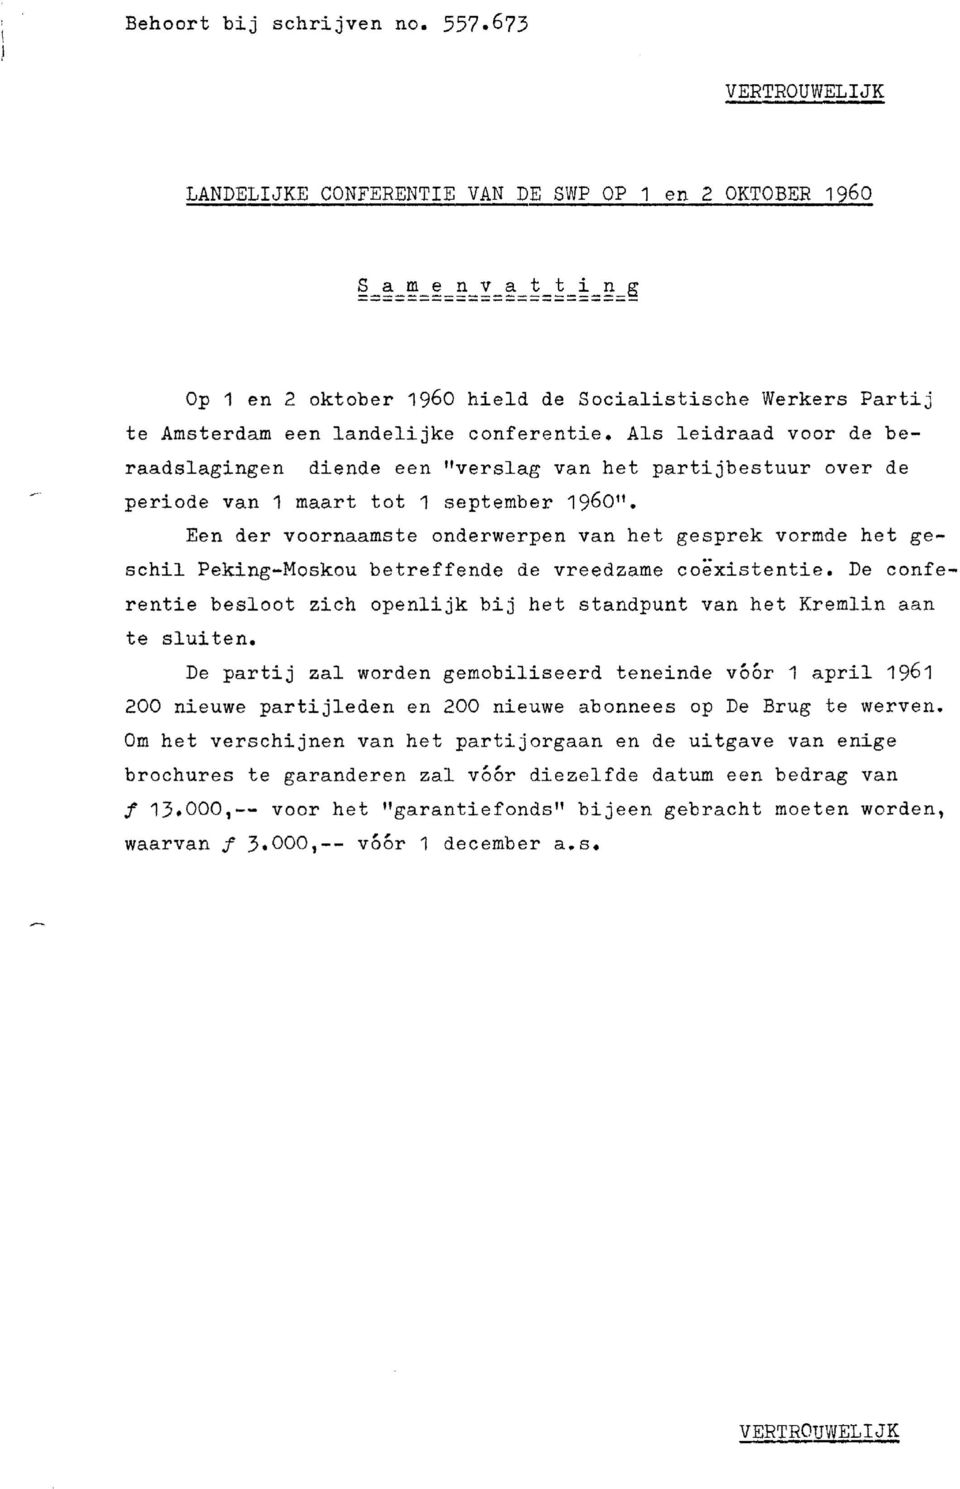 Als leidraad voor de beraadslagingen diende een "verslag van het partijbestuur over de periode van 1 maart tot 1 september 196011.